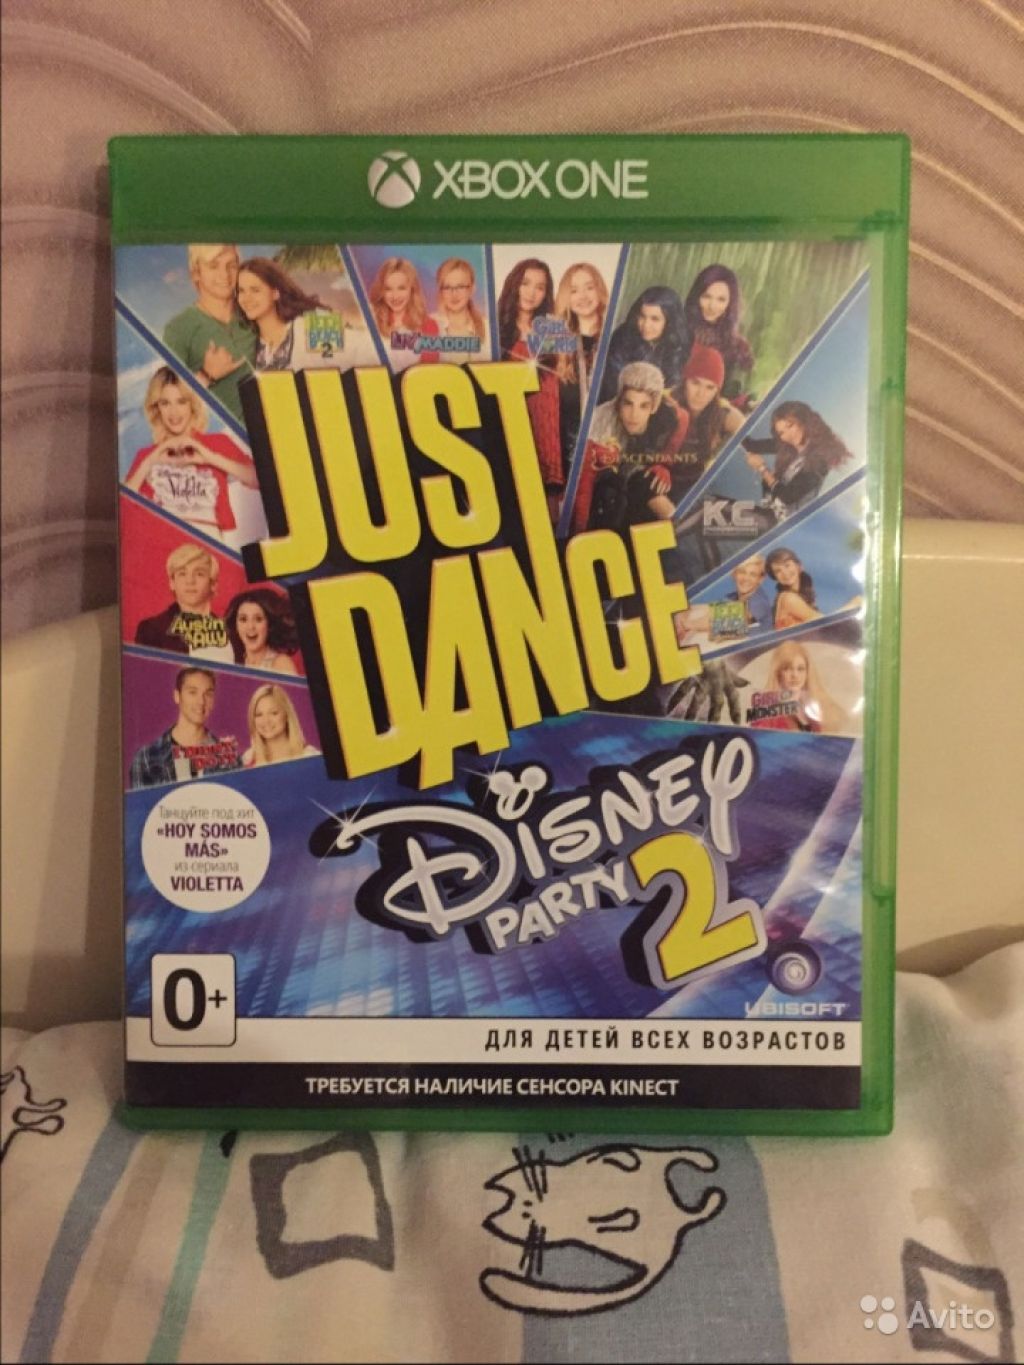 Just dance Disney party 2 Xbox one в Москве. Фото 1